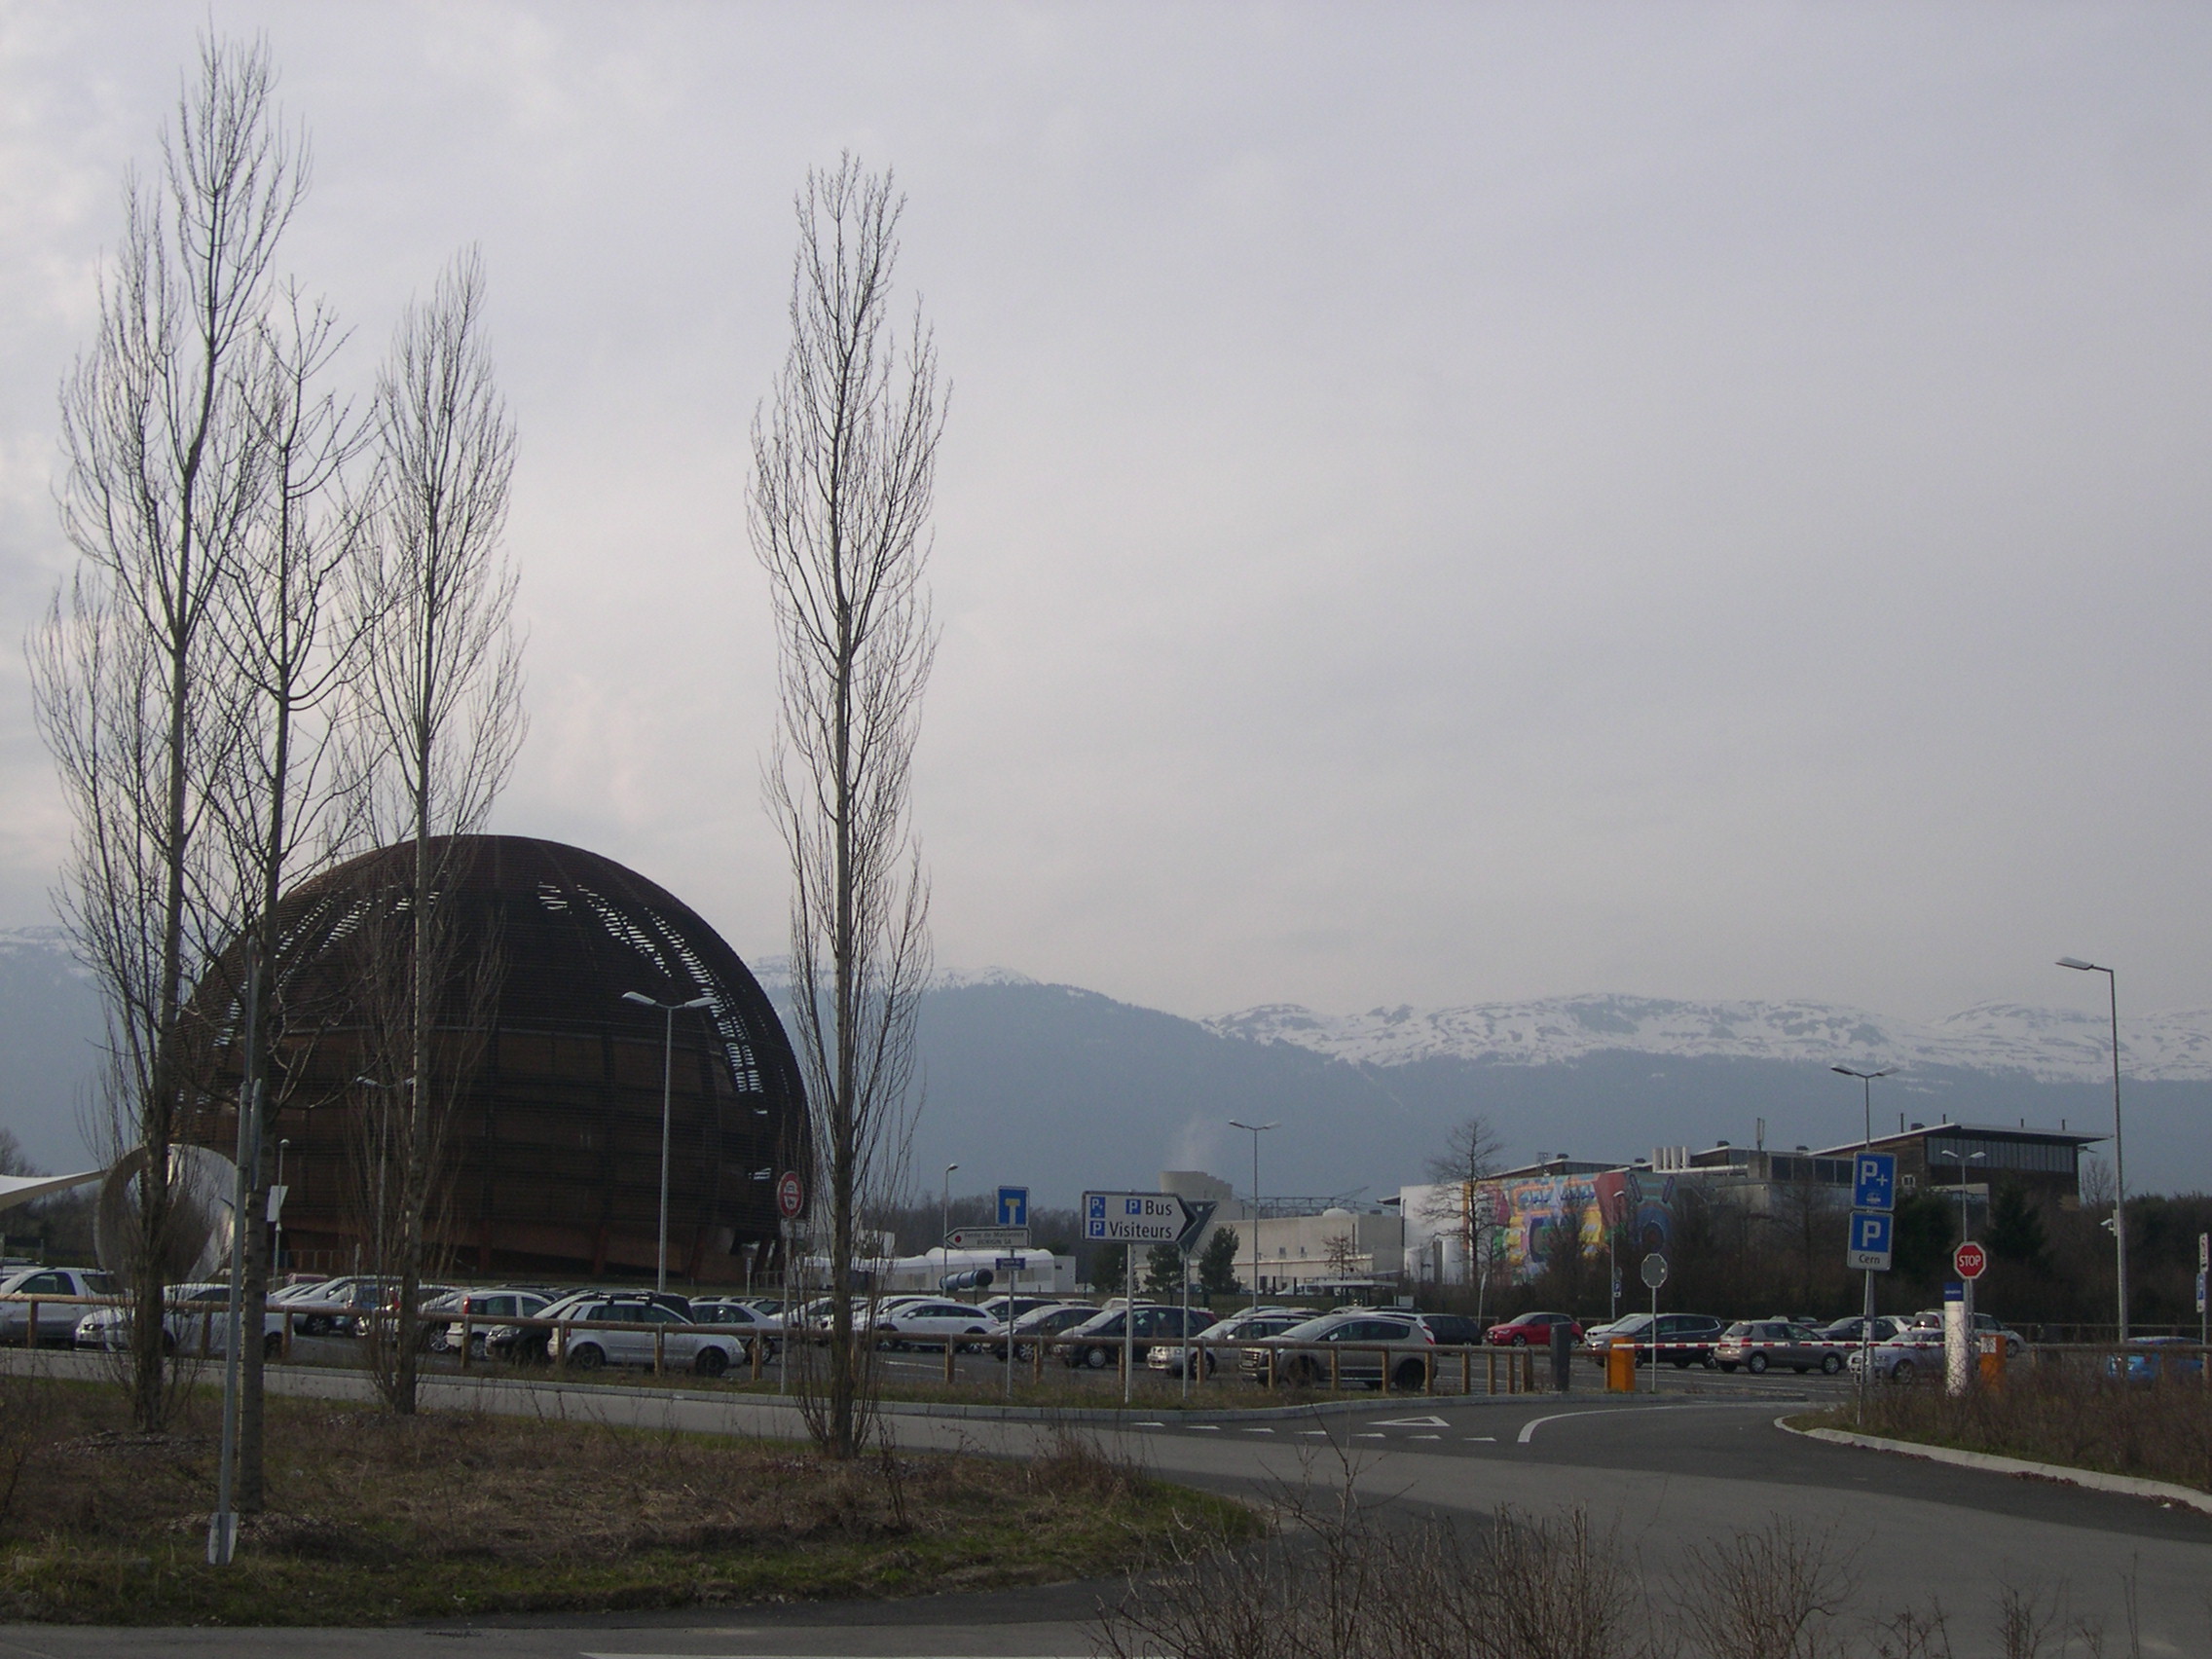 Arrivée au CERN. Face à un paysage aussi féérique, le voyageur se sent transporté par la sensation d'être allé au bout de lui-même et de la Suisse à la fois. [JB Bing 2015]